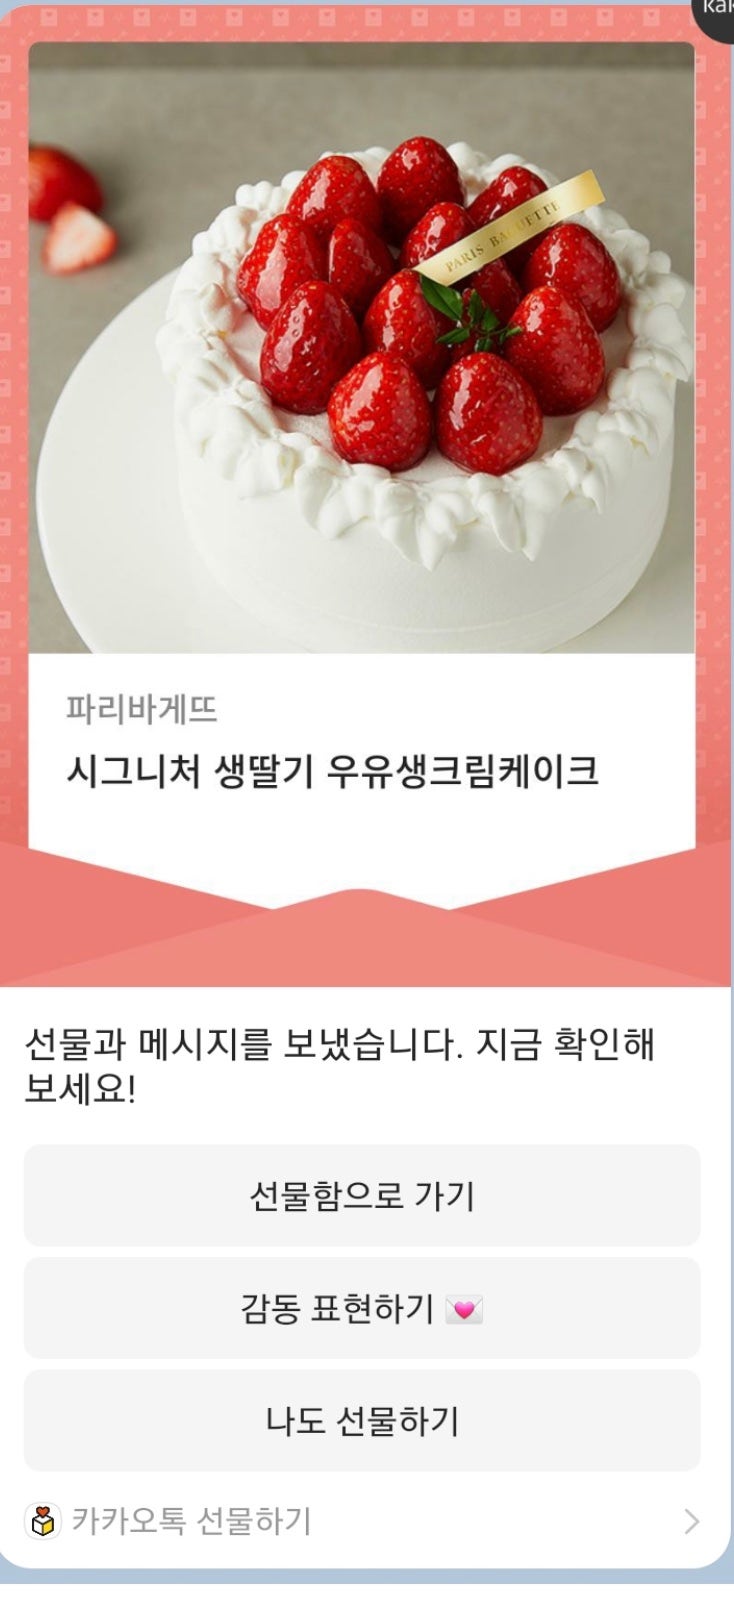 기념일에 카카오톡 선물하기 좋은 파리바게뜨 케이크 ) 시그니처 생딸기 우유생크림케이크